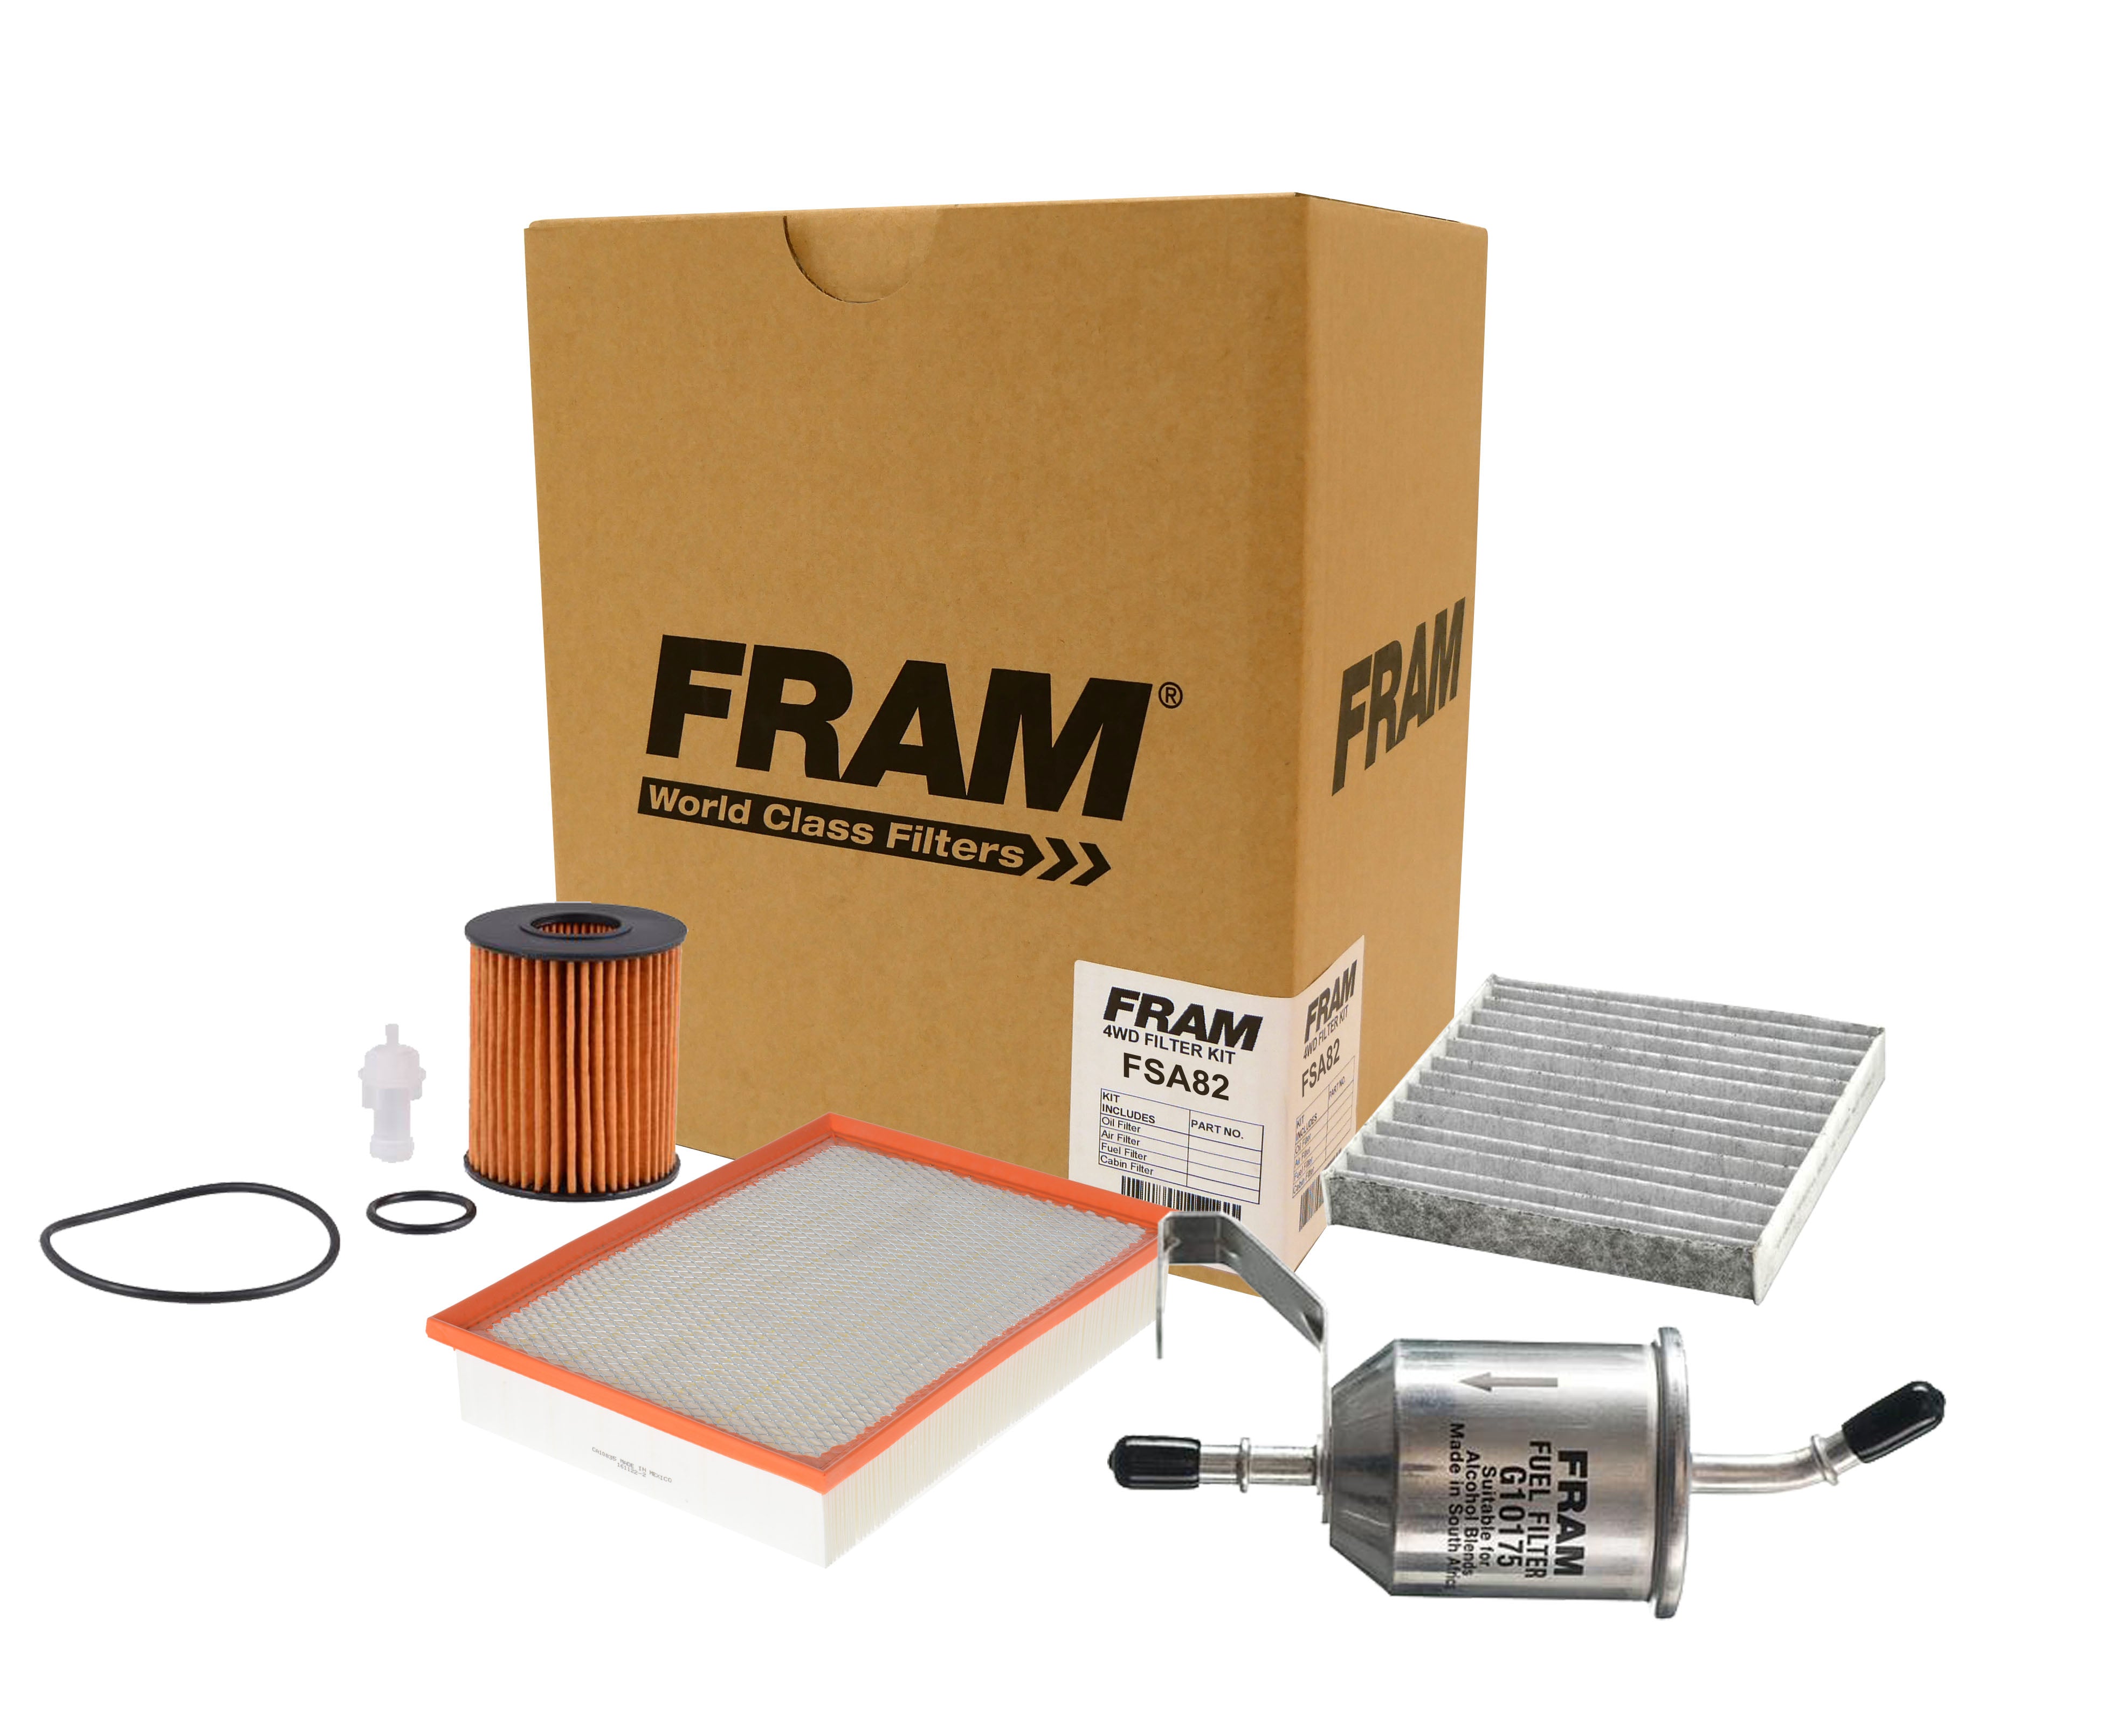 FRAM 4wd Filter Kit for Toyota Prado GRJ150 4.0L 09-15 | FRAM